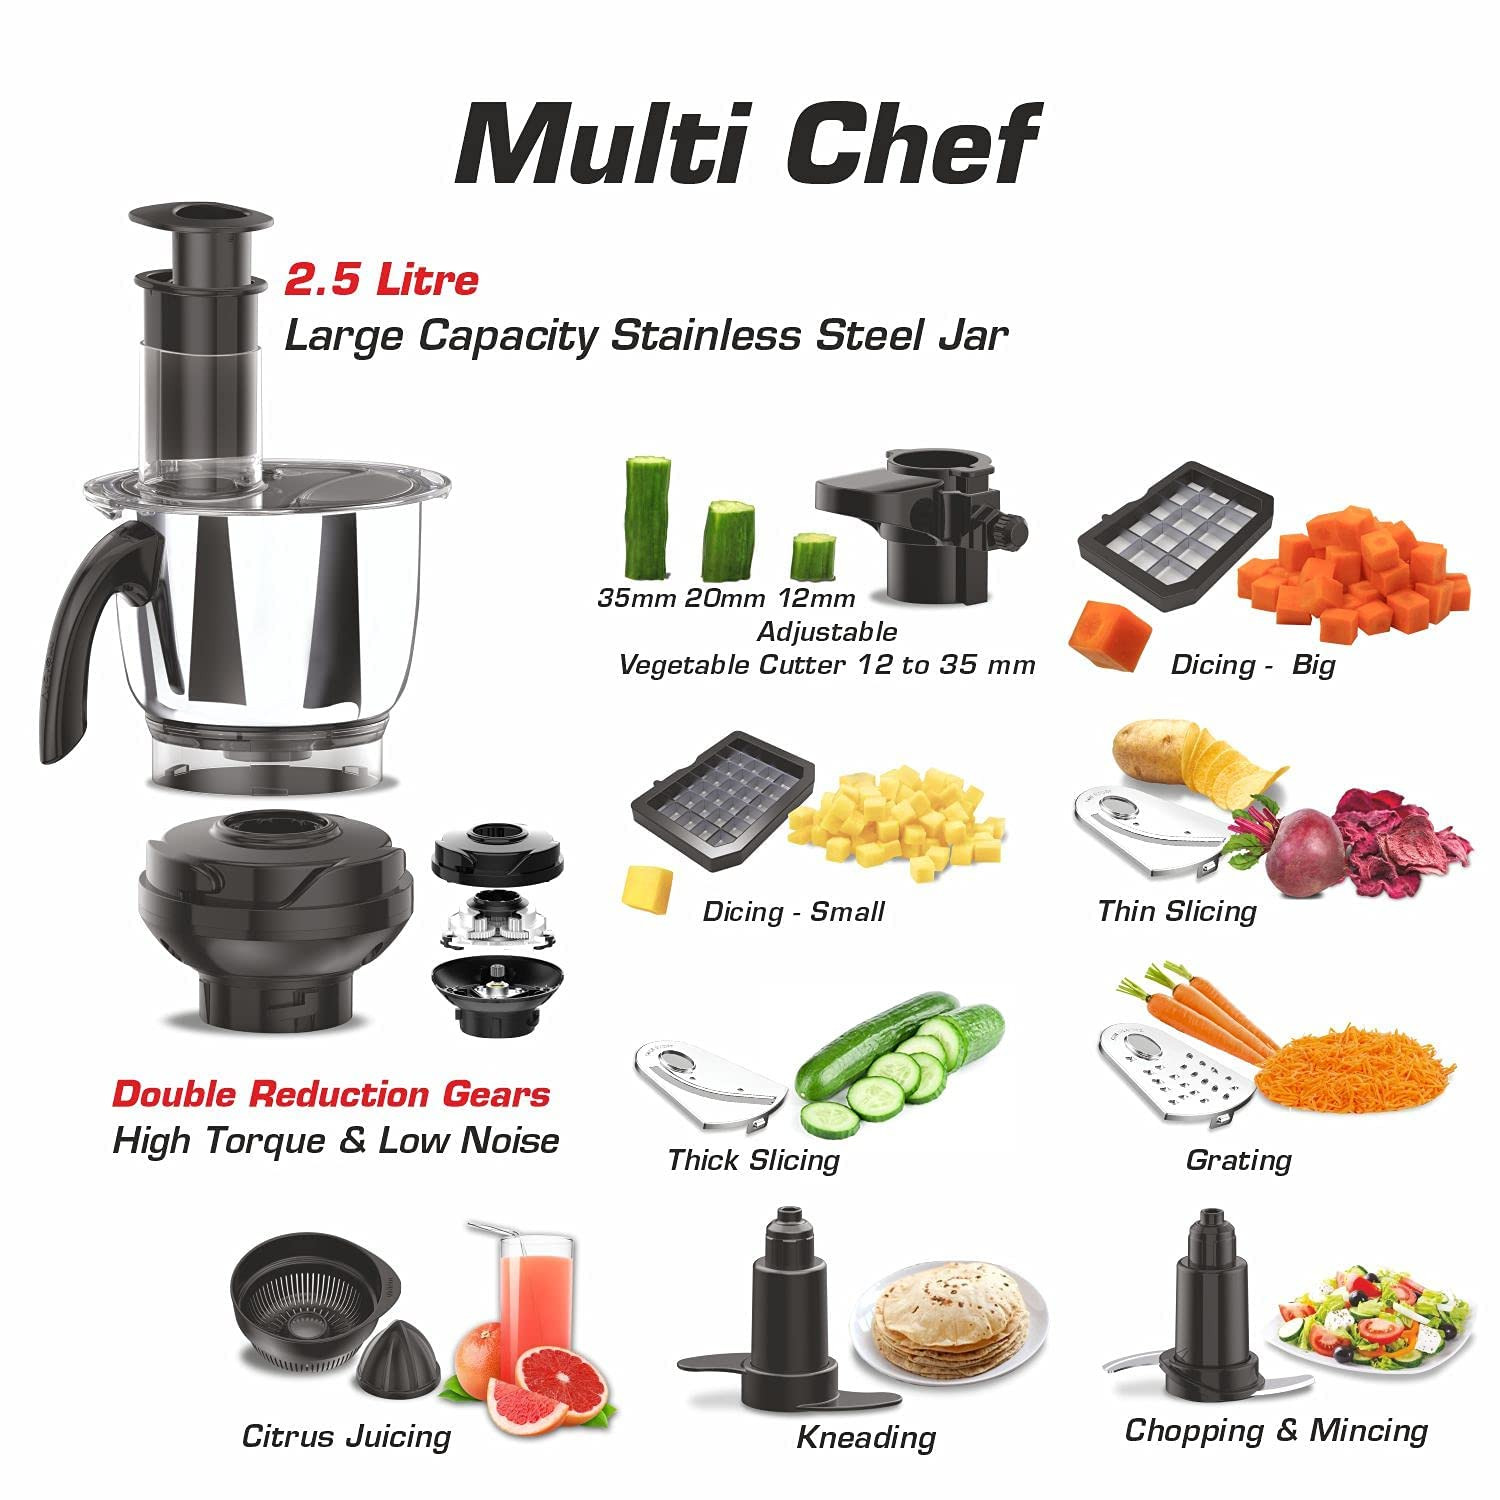 vidiem-tusker-indian-mixer-grinder-blender-food-processor-750w-110v-5-ss-jars-adjustable-vegetable-cutter-dicing-feature-almond-milk-juicer-spice-coffee-grinder-for-usa-canada8